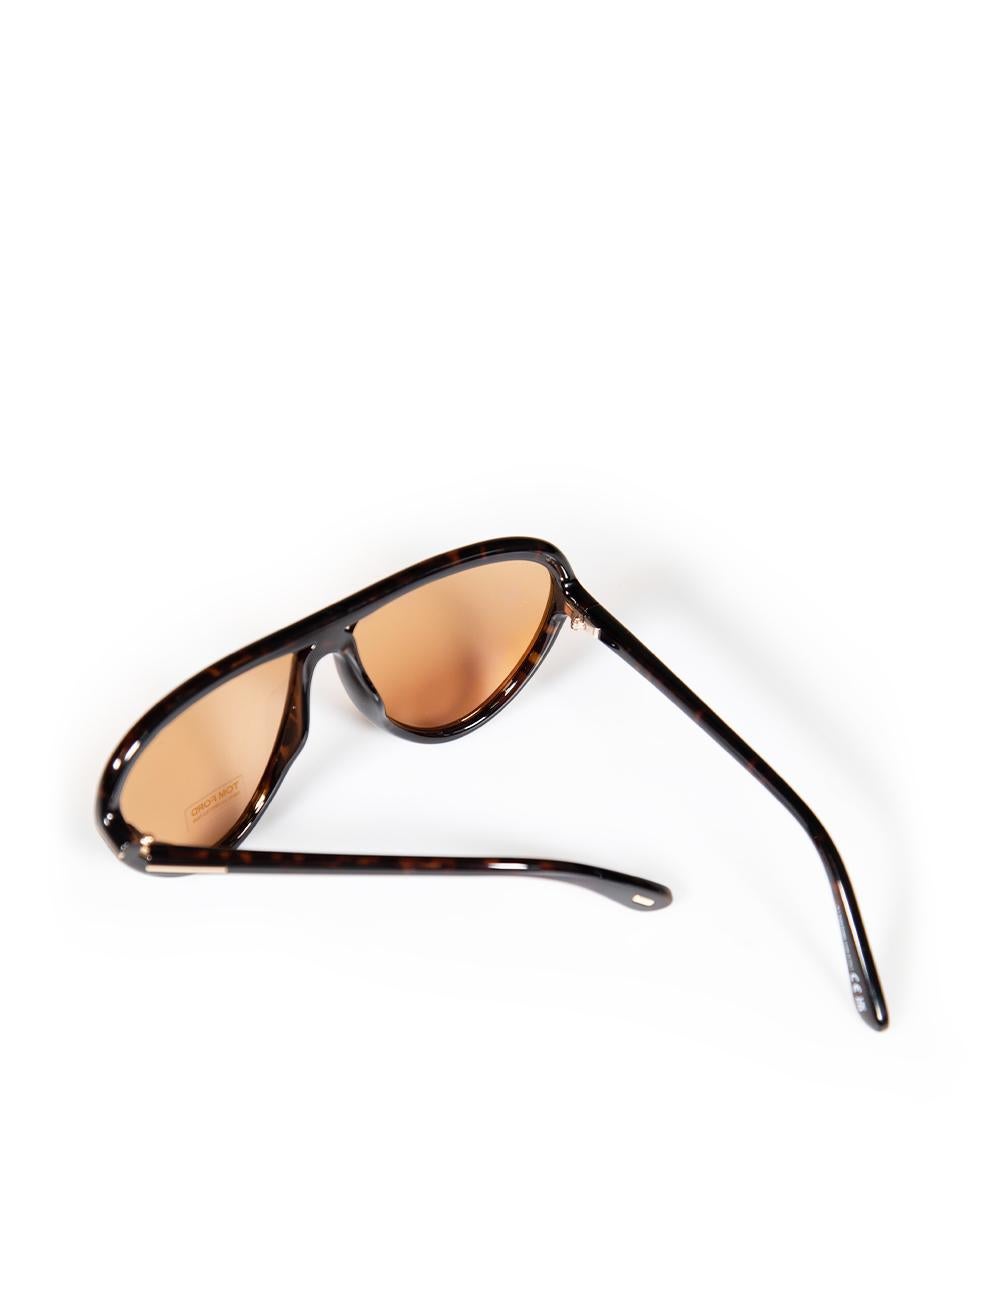 Tom Ford Arizona Dark Havana Pilot Sunglasses For Sale 3